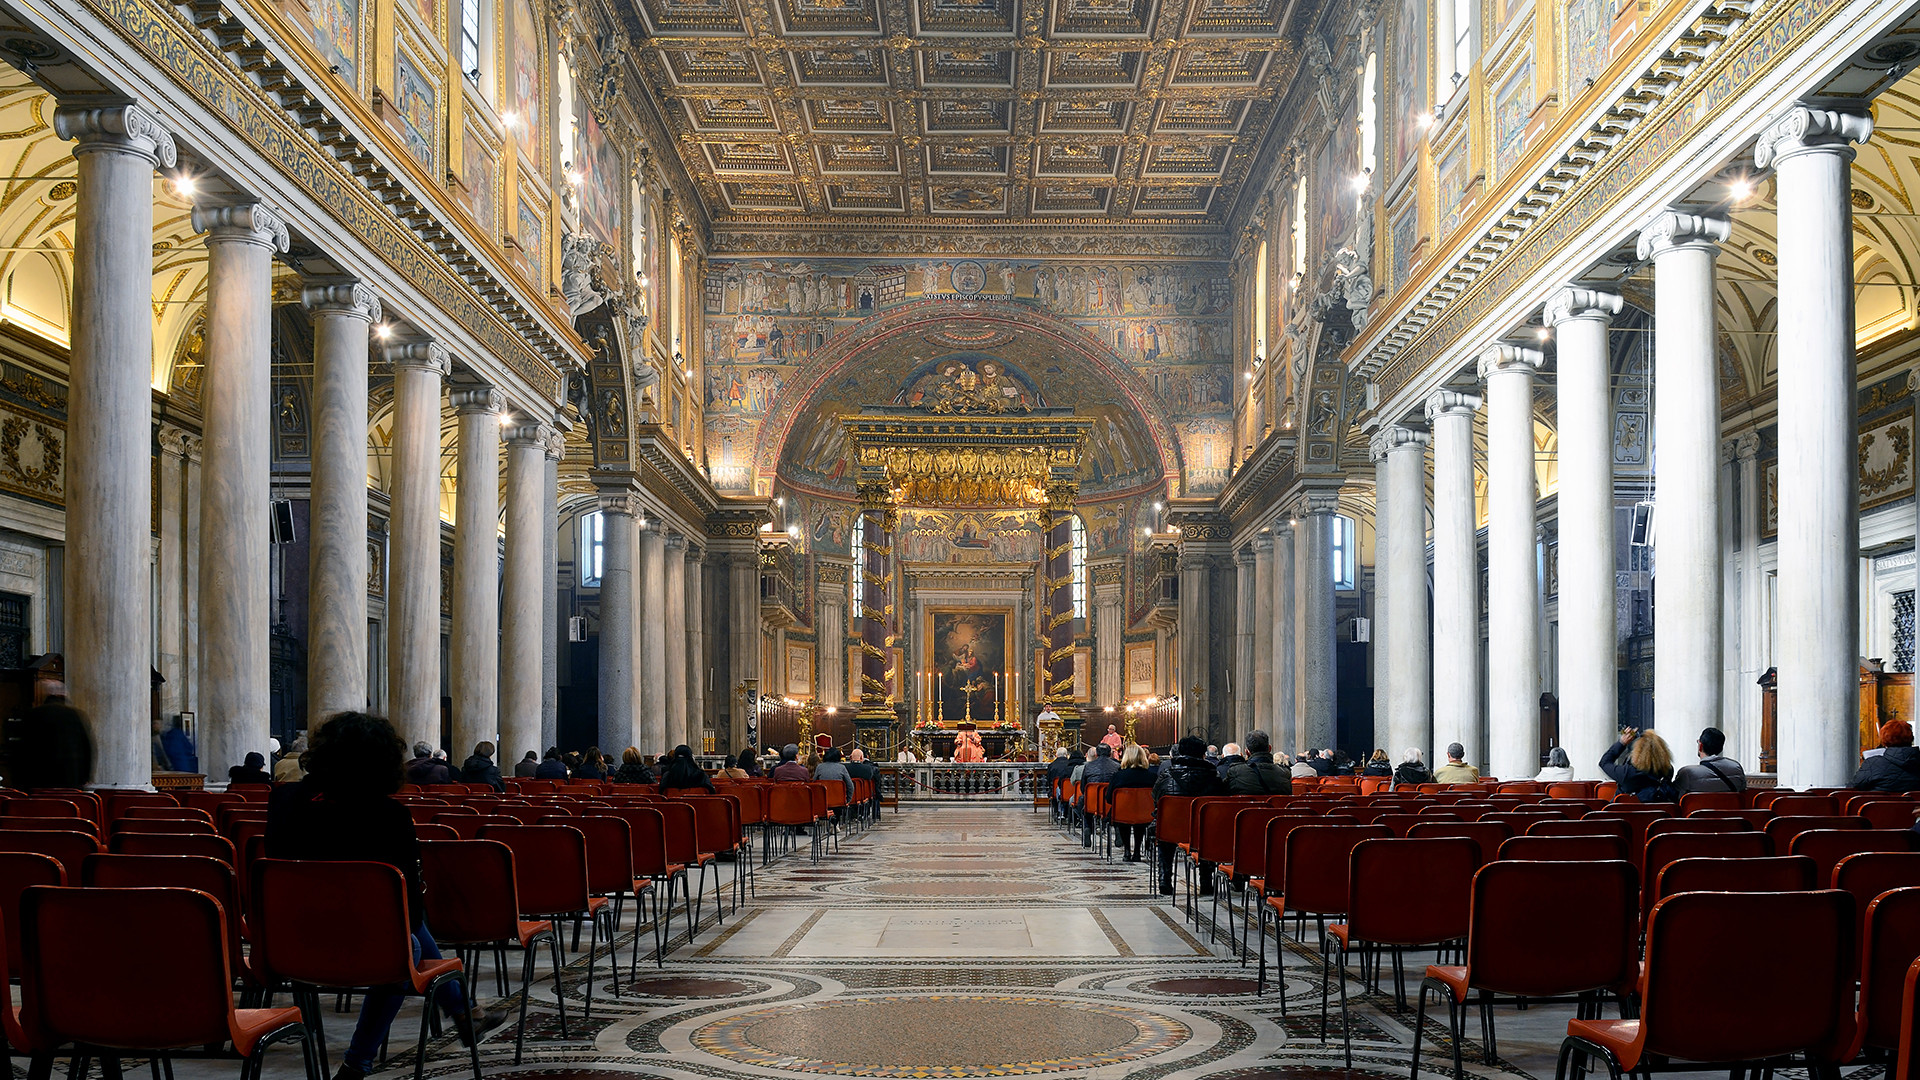 La nef de la basilique Sainte-Marie-Majeure de Rome (Photo: wikimedia/Livioandronico2013/CC BY-SA 4.0)